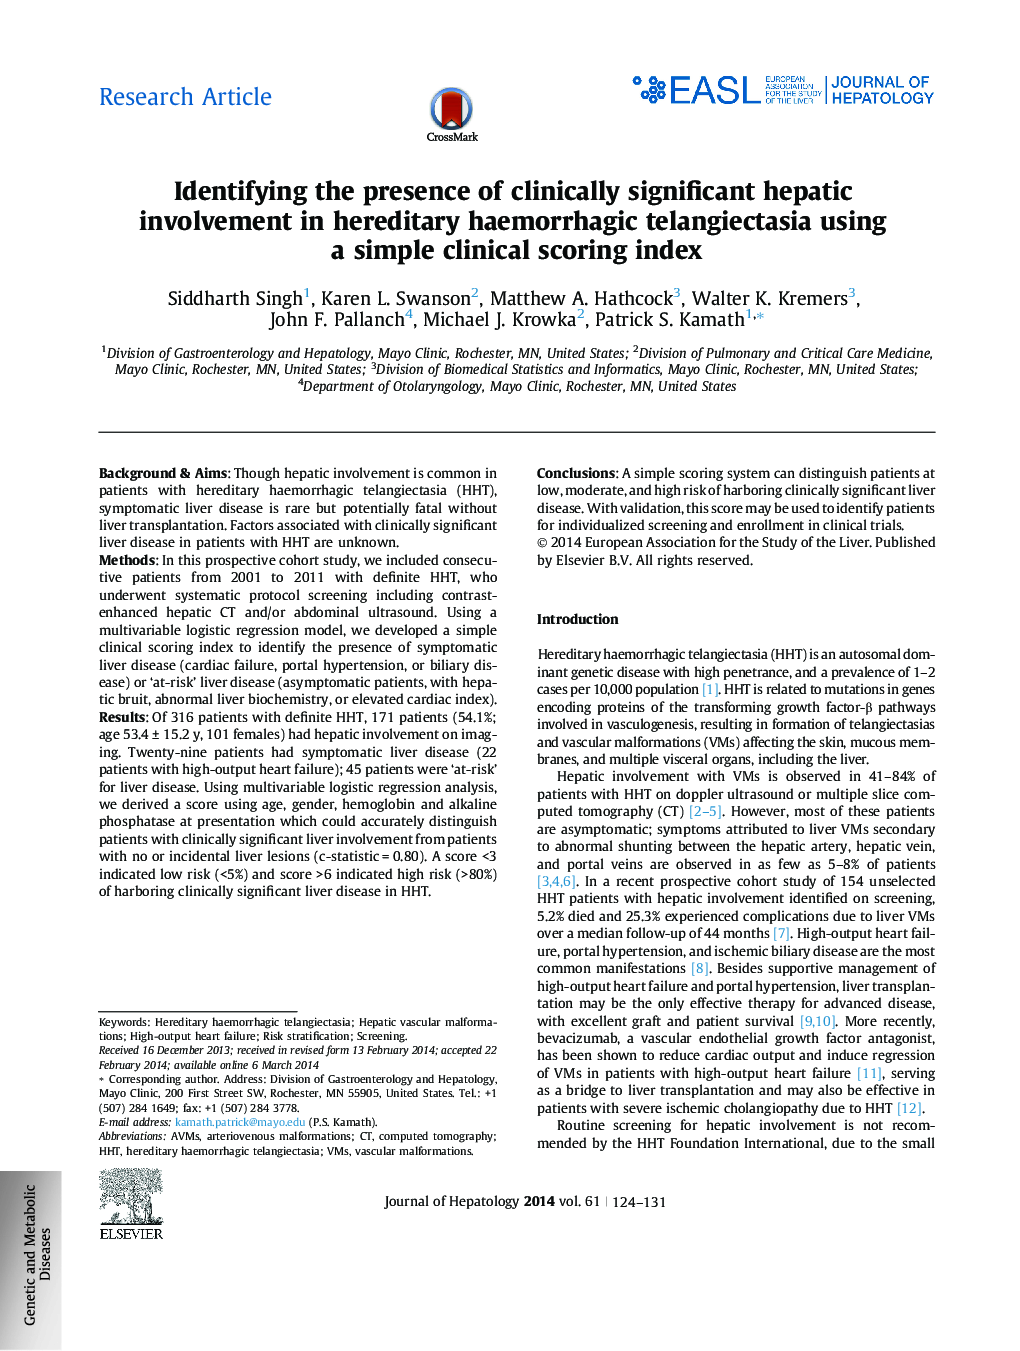 مقاله پژوهشی شناسایی حضور قابل توجهی از کبد بالقوه در تلانژکتازیا هموراژیک ارثی با استفاده از شاخص نمره دهی بالینی ساده 